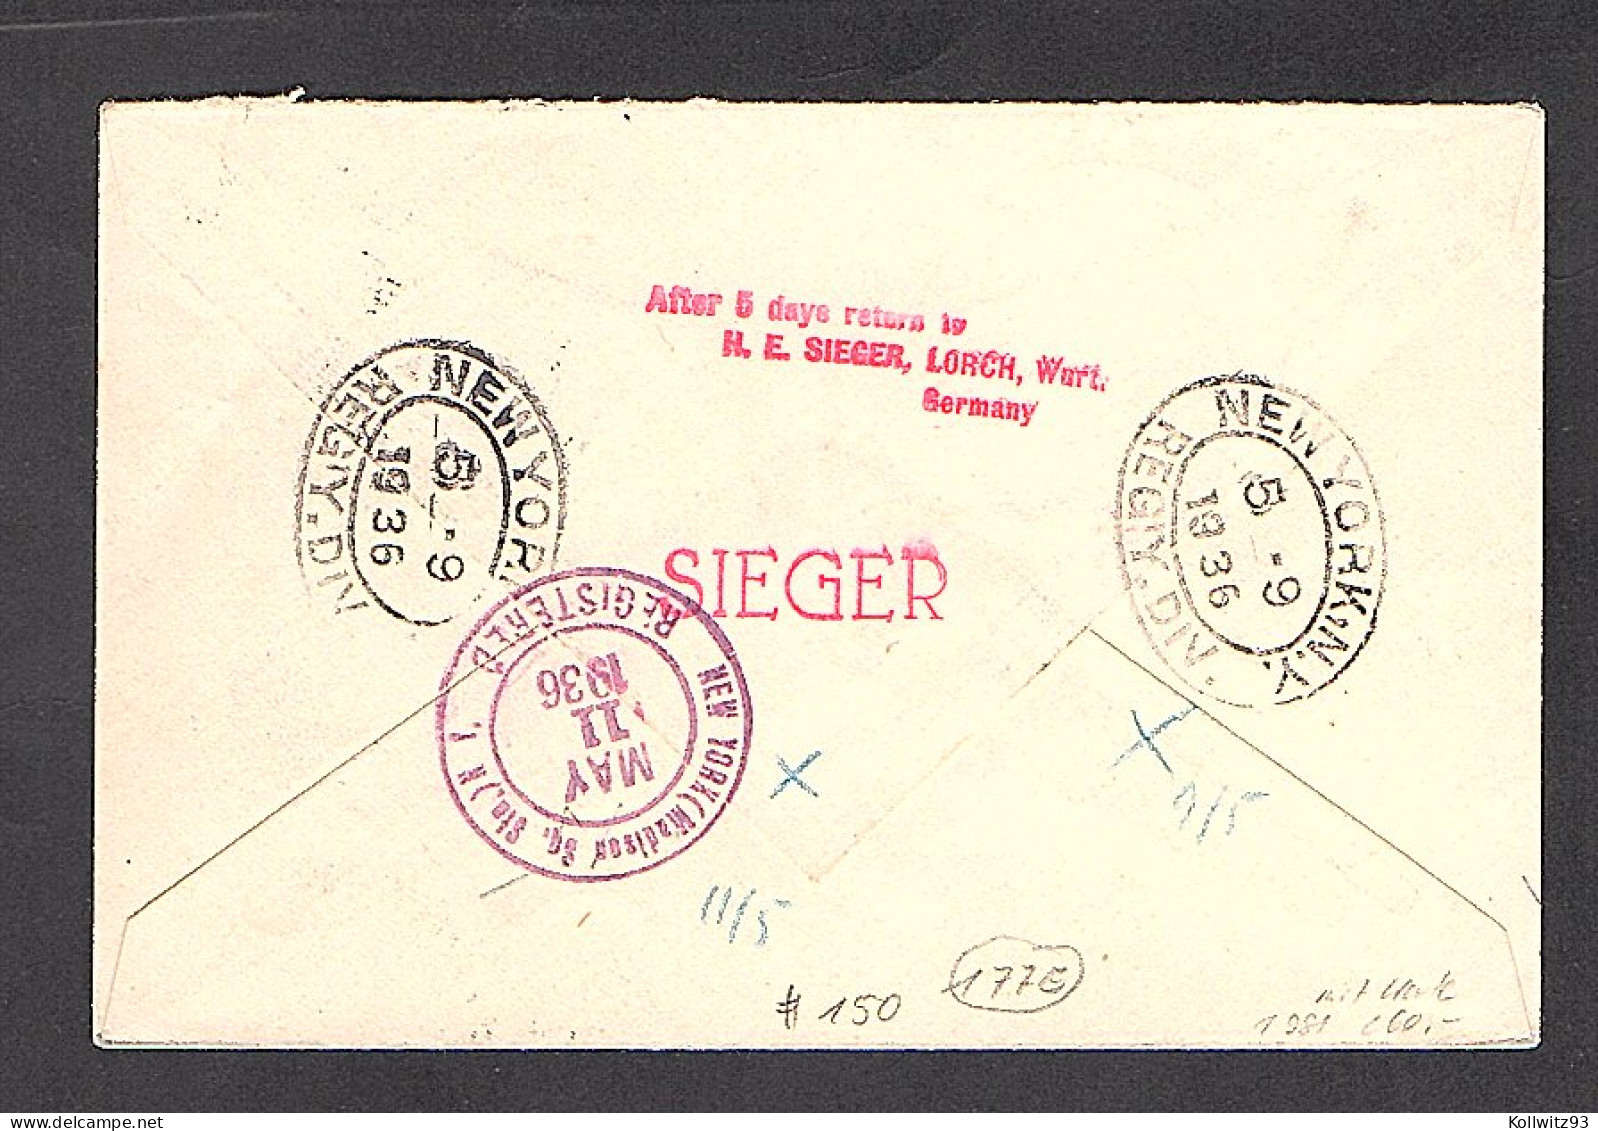 Liechtenstein Zeppelin Brief/Karte LZ 129, 1.Nordamerikafahrt 1936, Si 408AB - Zeppeline